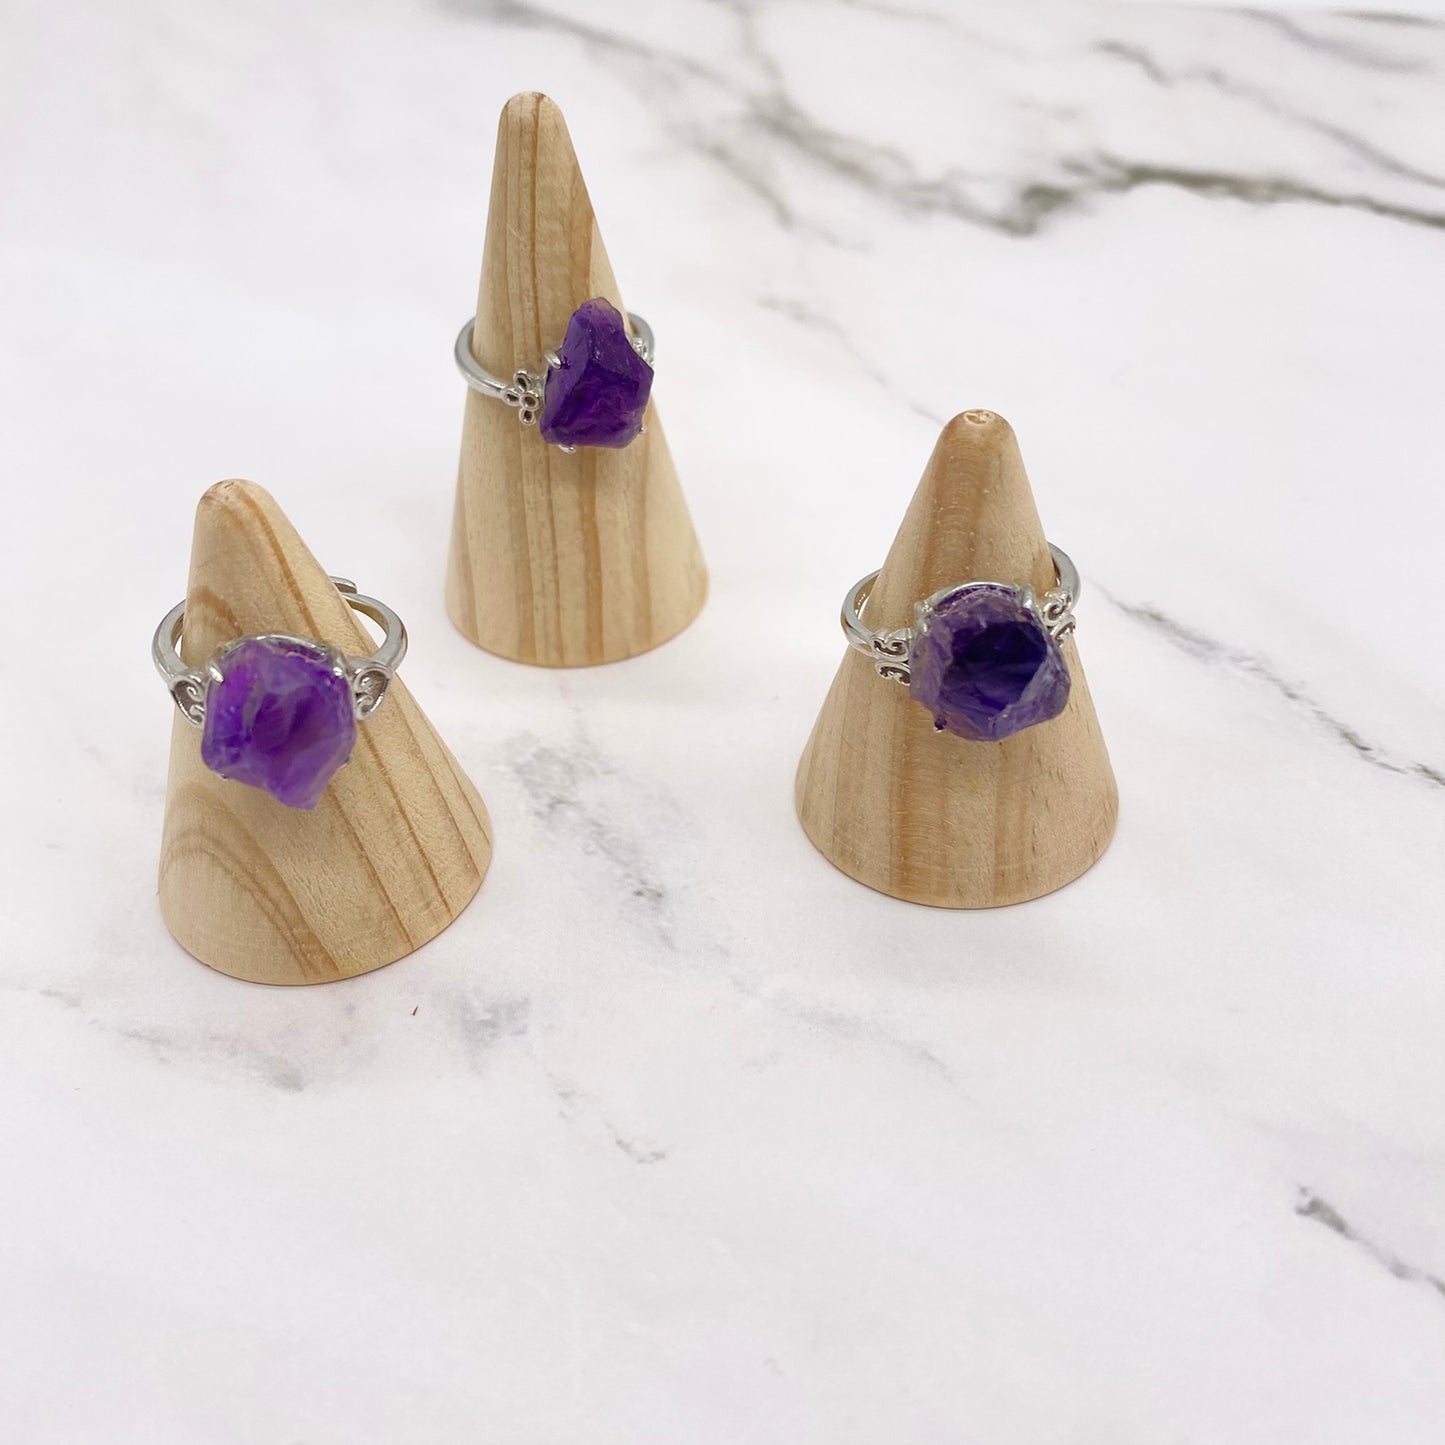 Healing Natural Gem Stone Crystal Rings for Women Lapis Tigereye Turquoises  Pink Quartz Fashion Ring Party Wedding Resizable